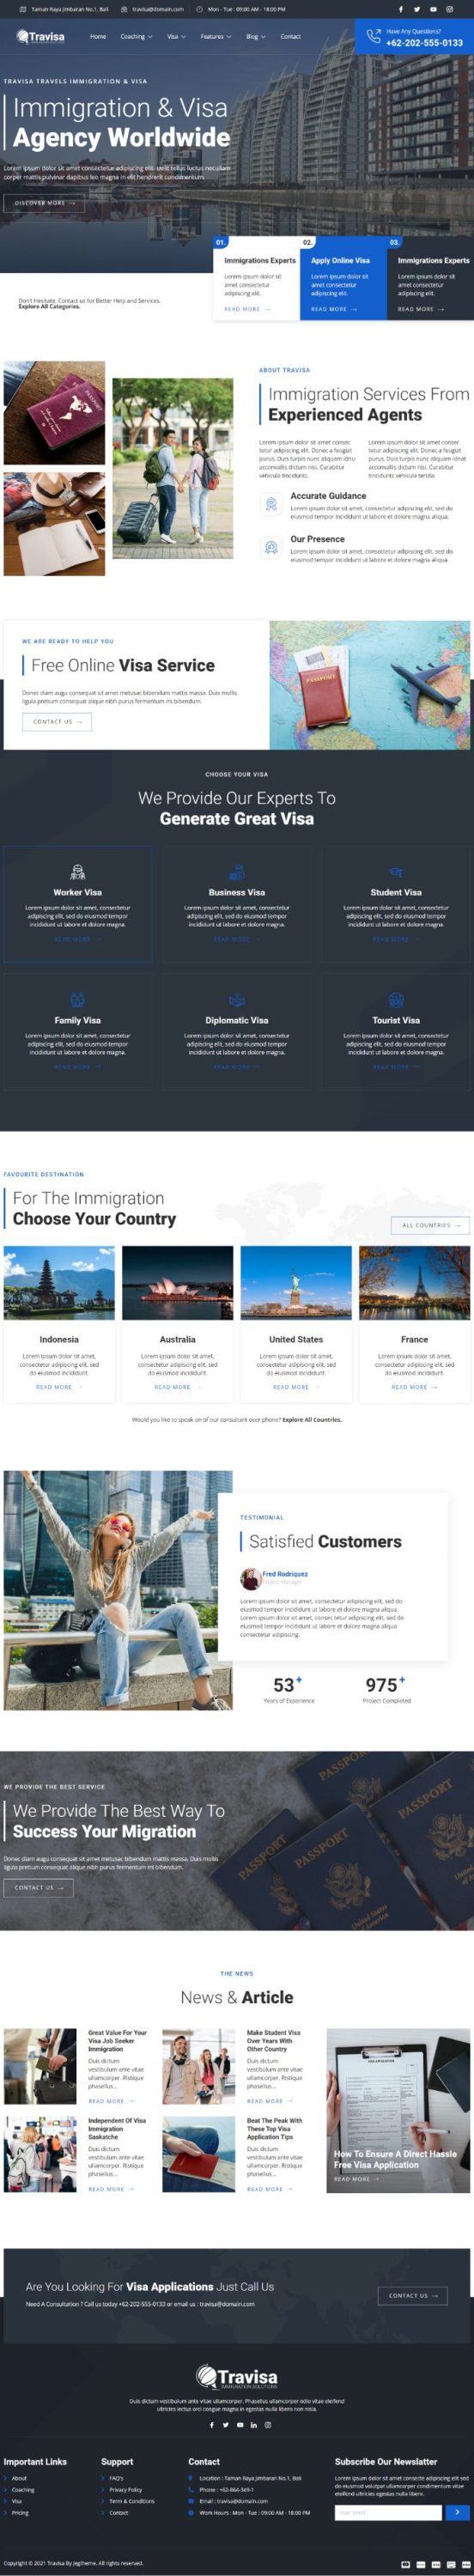 Mẫu website dịch vụ định cư visa - Travisa